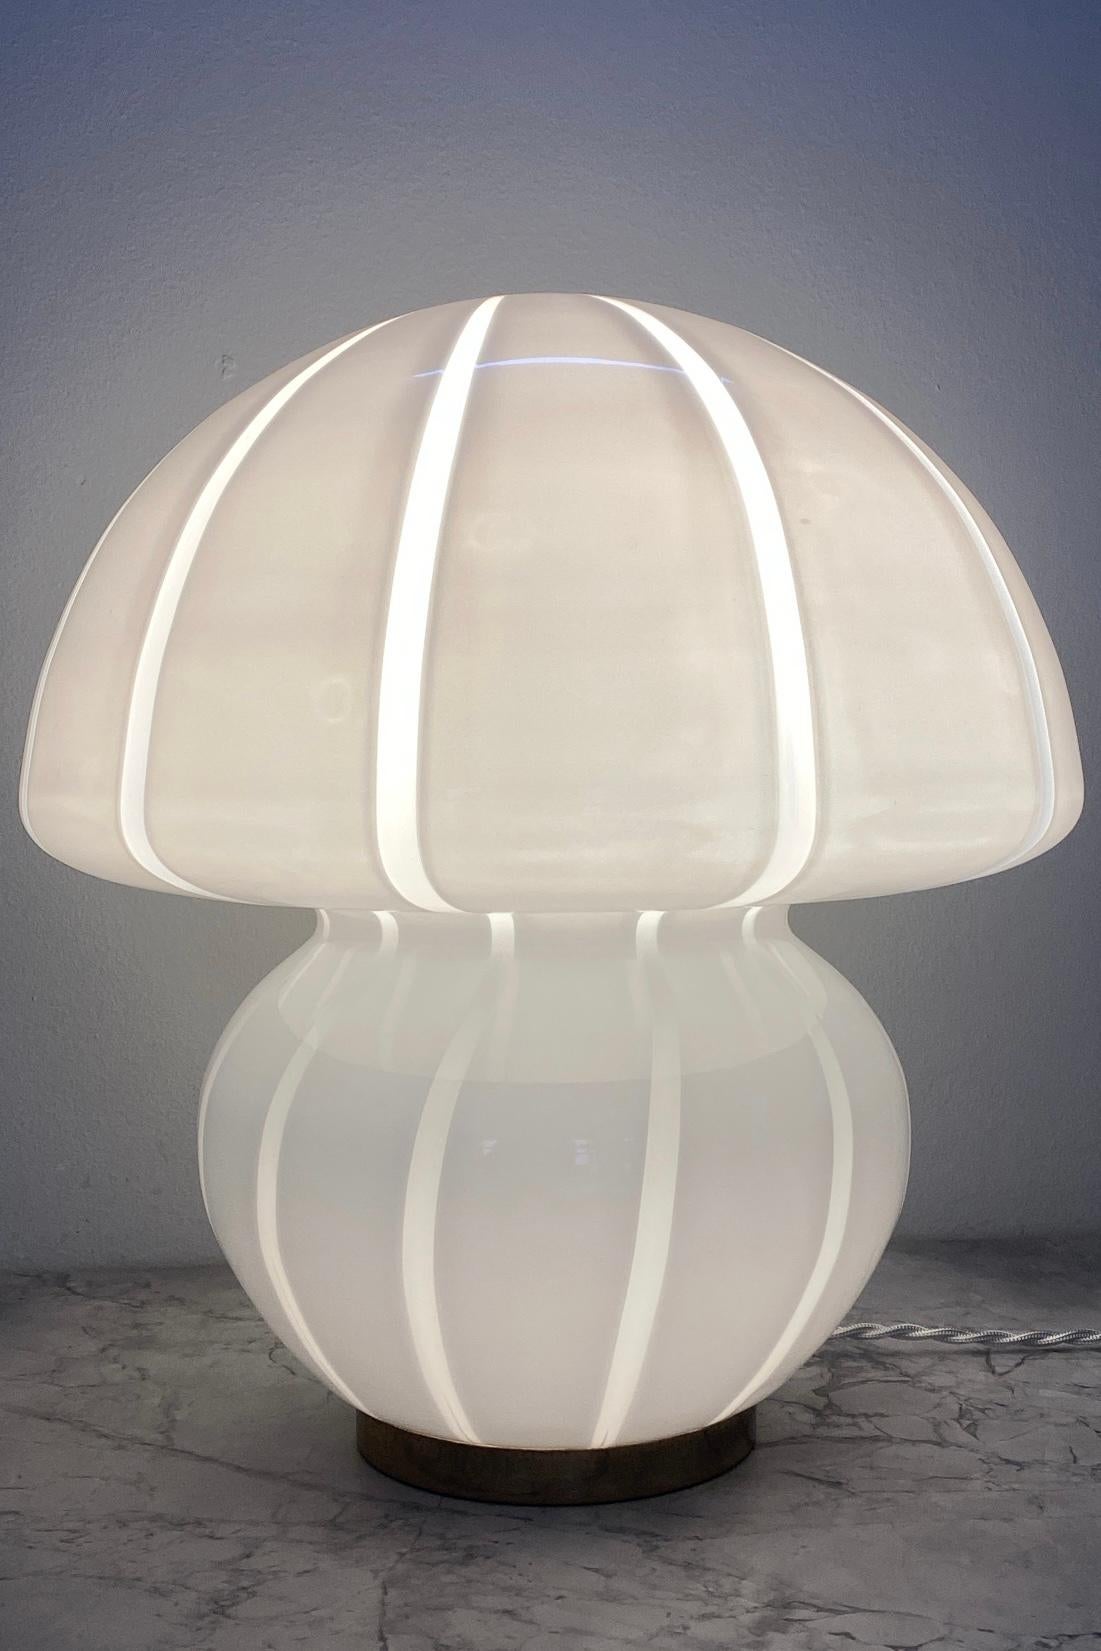 Très grande lampe champignon vintage de Murano. Verre opalin blanc soufflé à la bouche. Fabriqué à la main en Italie, dans les années 1970, et livré avec un nouveau cordon blanc. 

H:38 cm D:34 cm